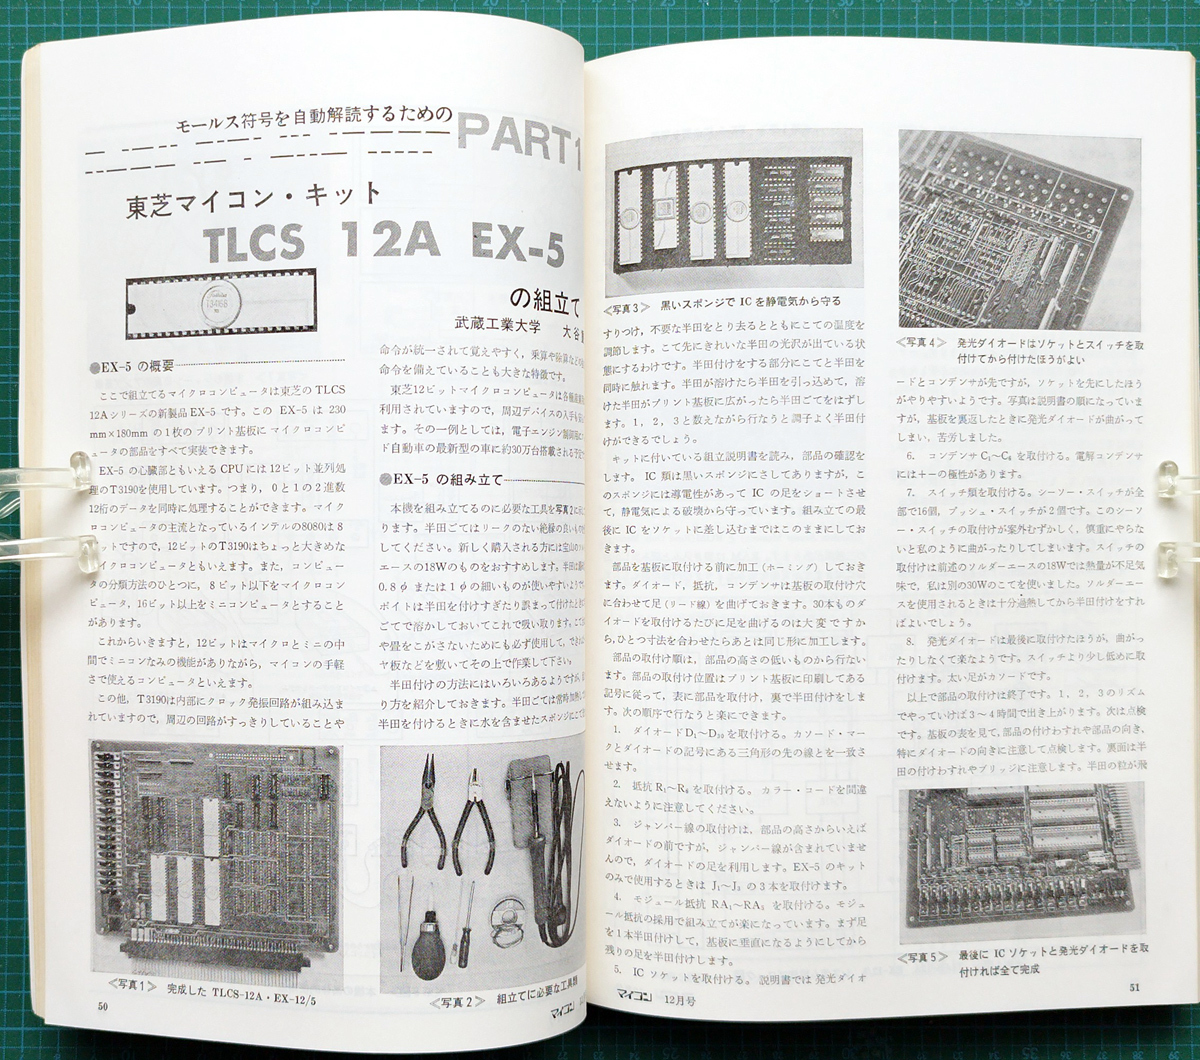 月刊マイコン 1977年12月号 創刊3号 / 6800 H68/TR ALTAIR680b TLCS-12A EX-5 TK-80 NIBL マイクロコンピュータ / 電波新聞社_画像8